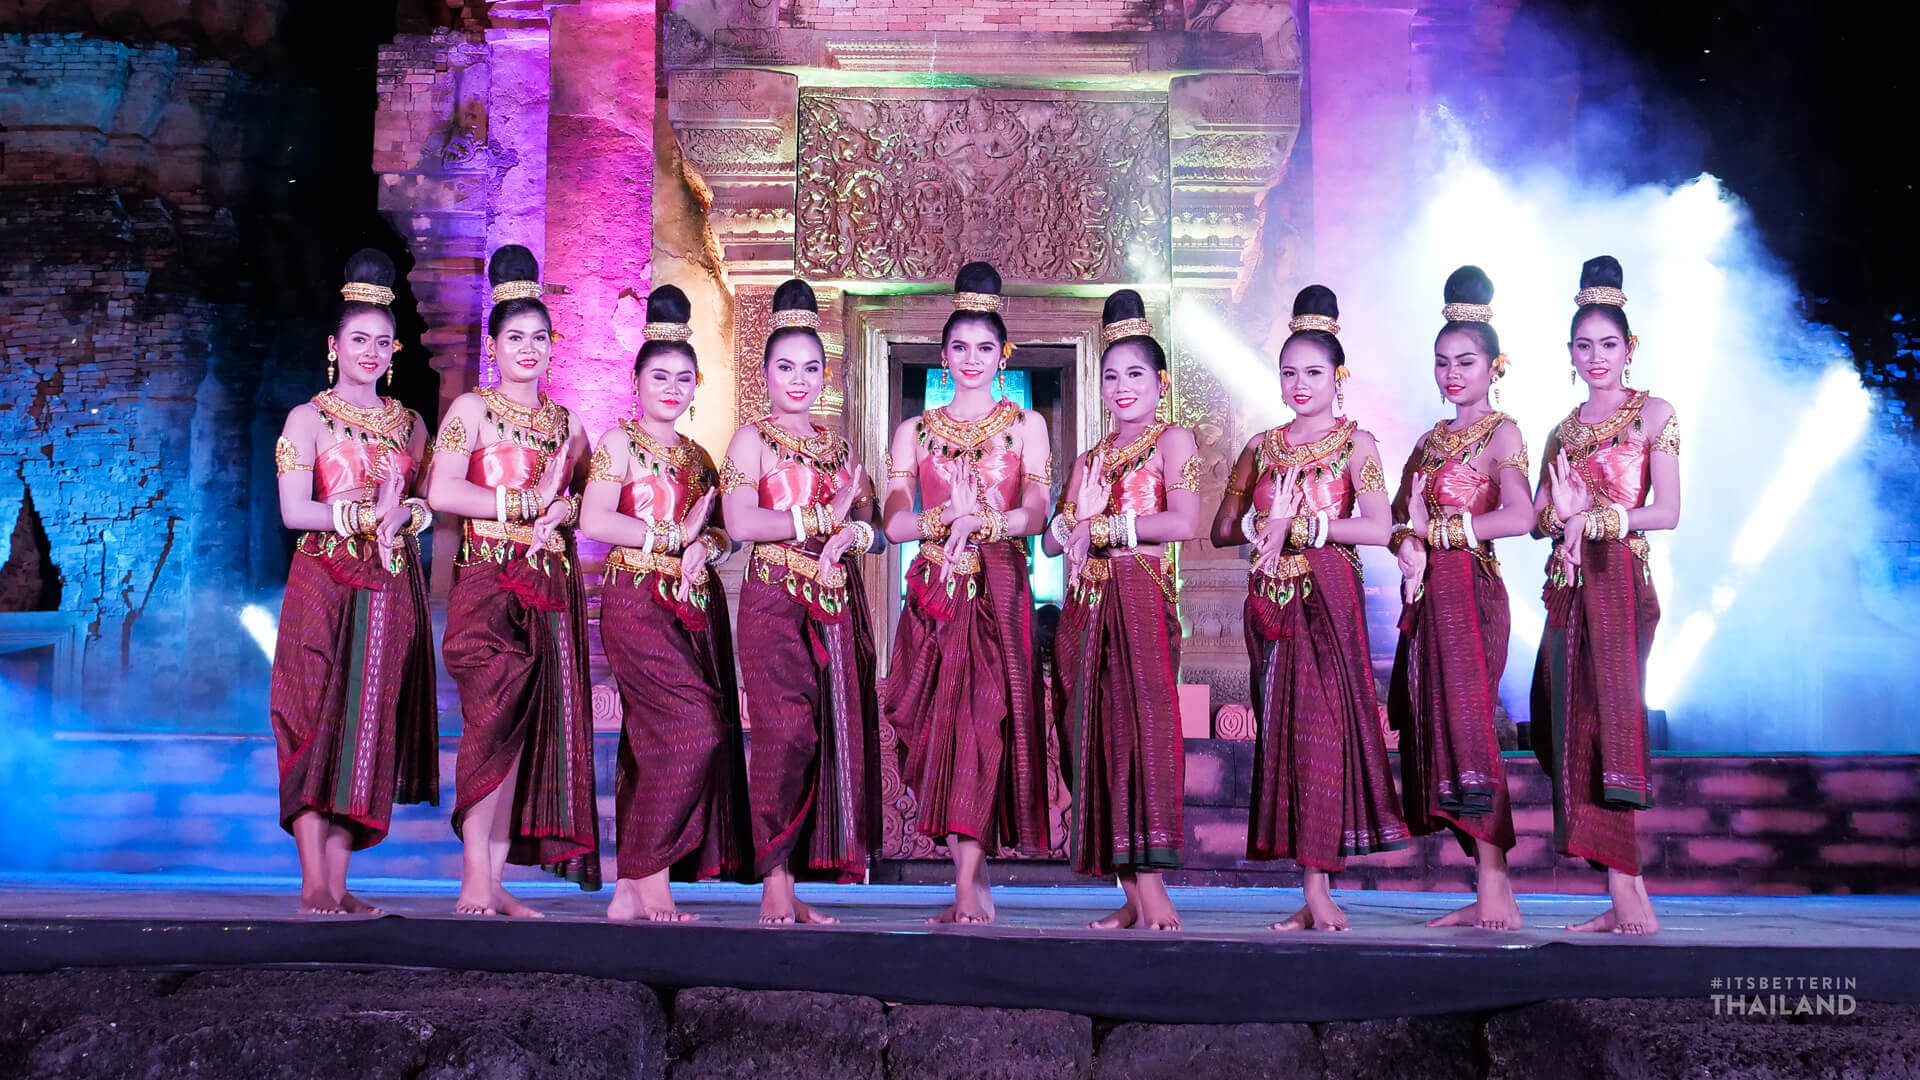 Si Khoraphum Light and Sound Show Surin Thailand